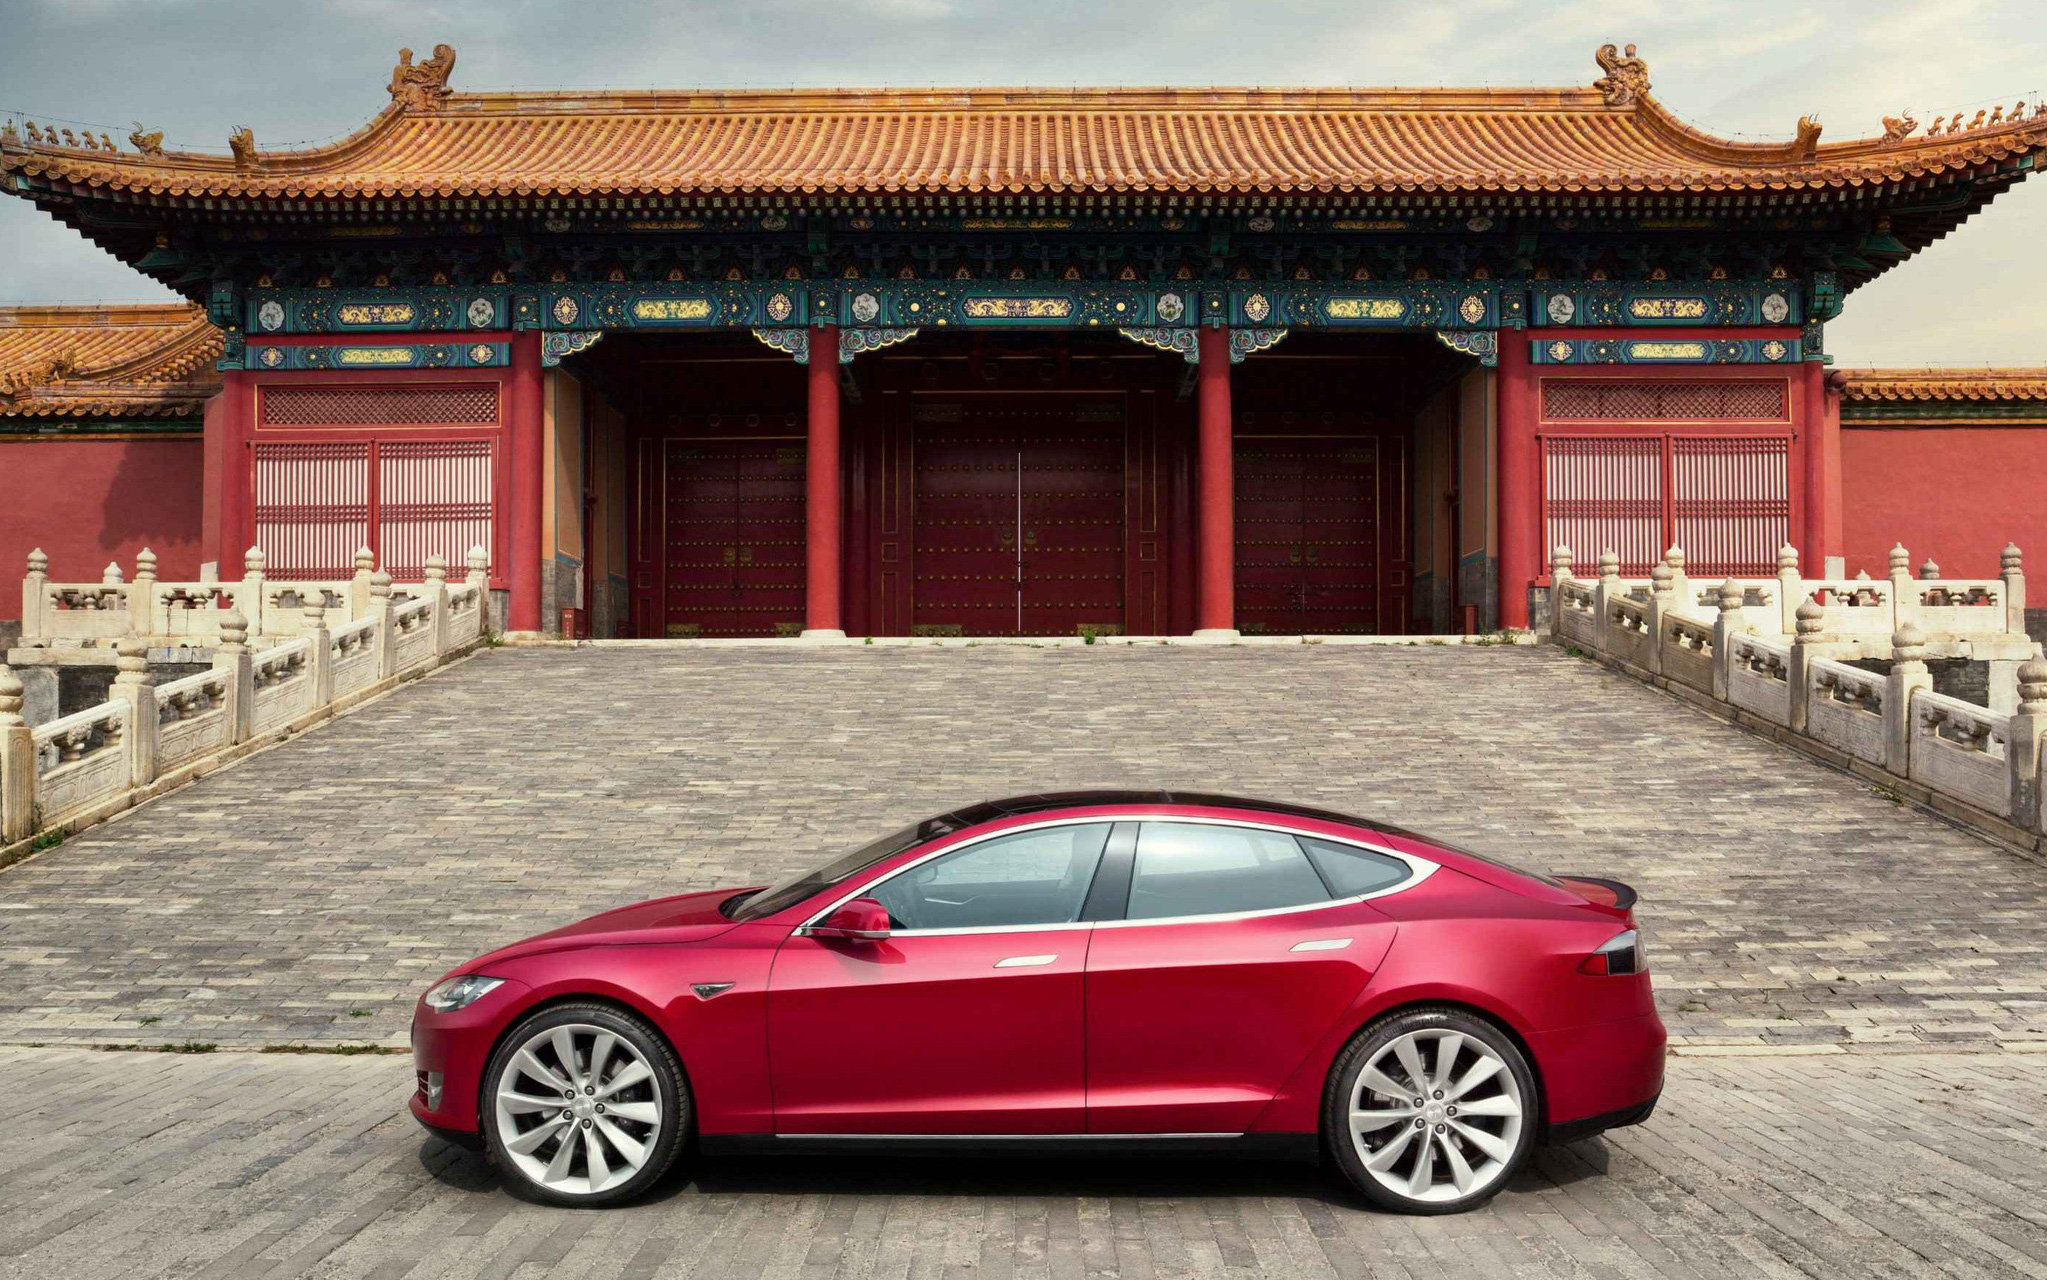 Quân đội Trung Quốc cấm cửa xe Tesla vì lo sợ lộ bí mật quân sự